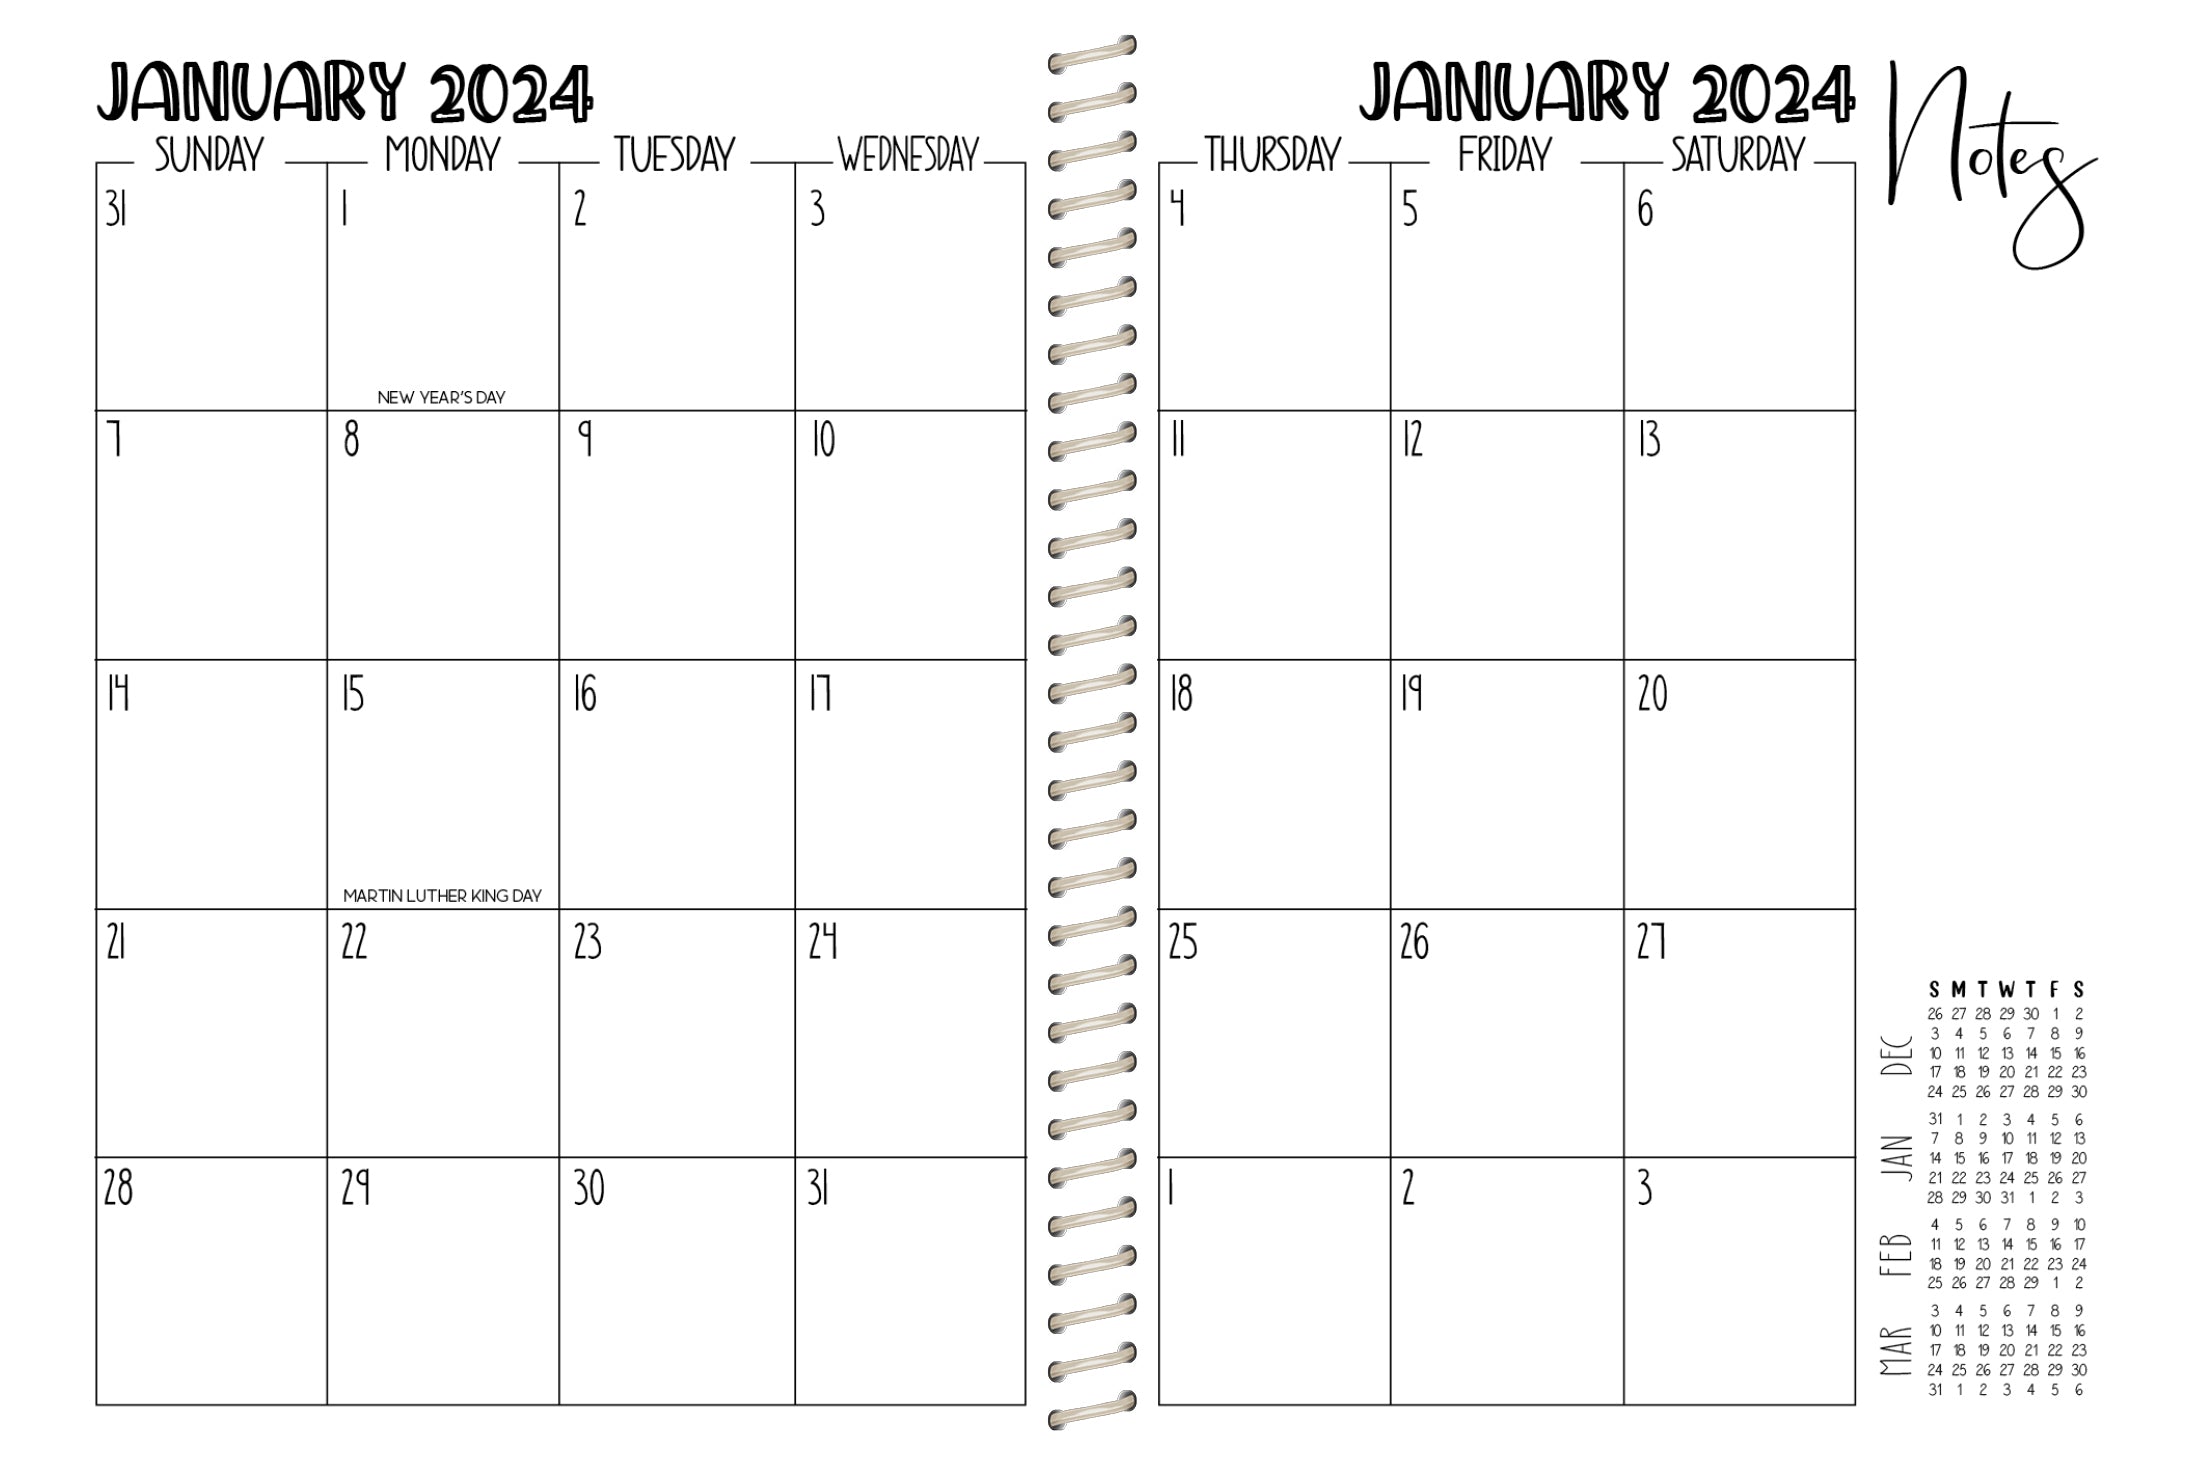 2024 Printed Weekly Planner - FAWN GEMSTONE